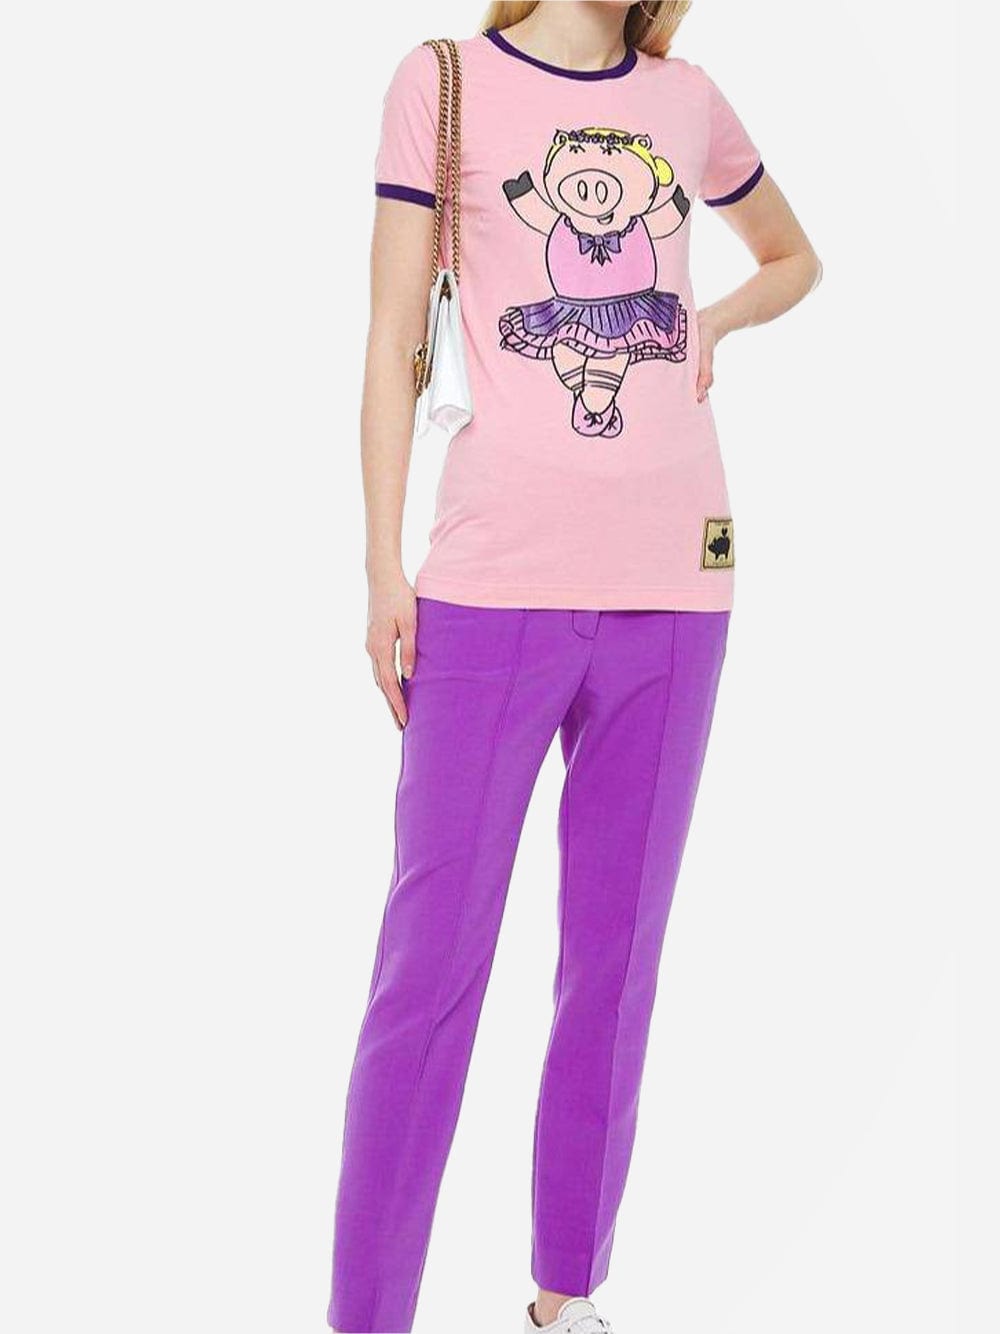 Dolce & Gabbana Ballerina Pig-Print T-Shirt